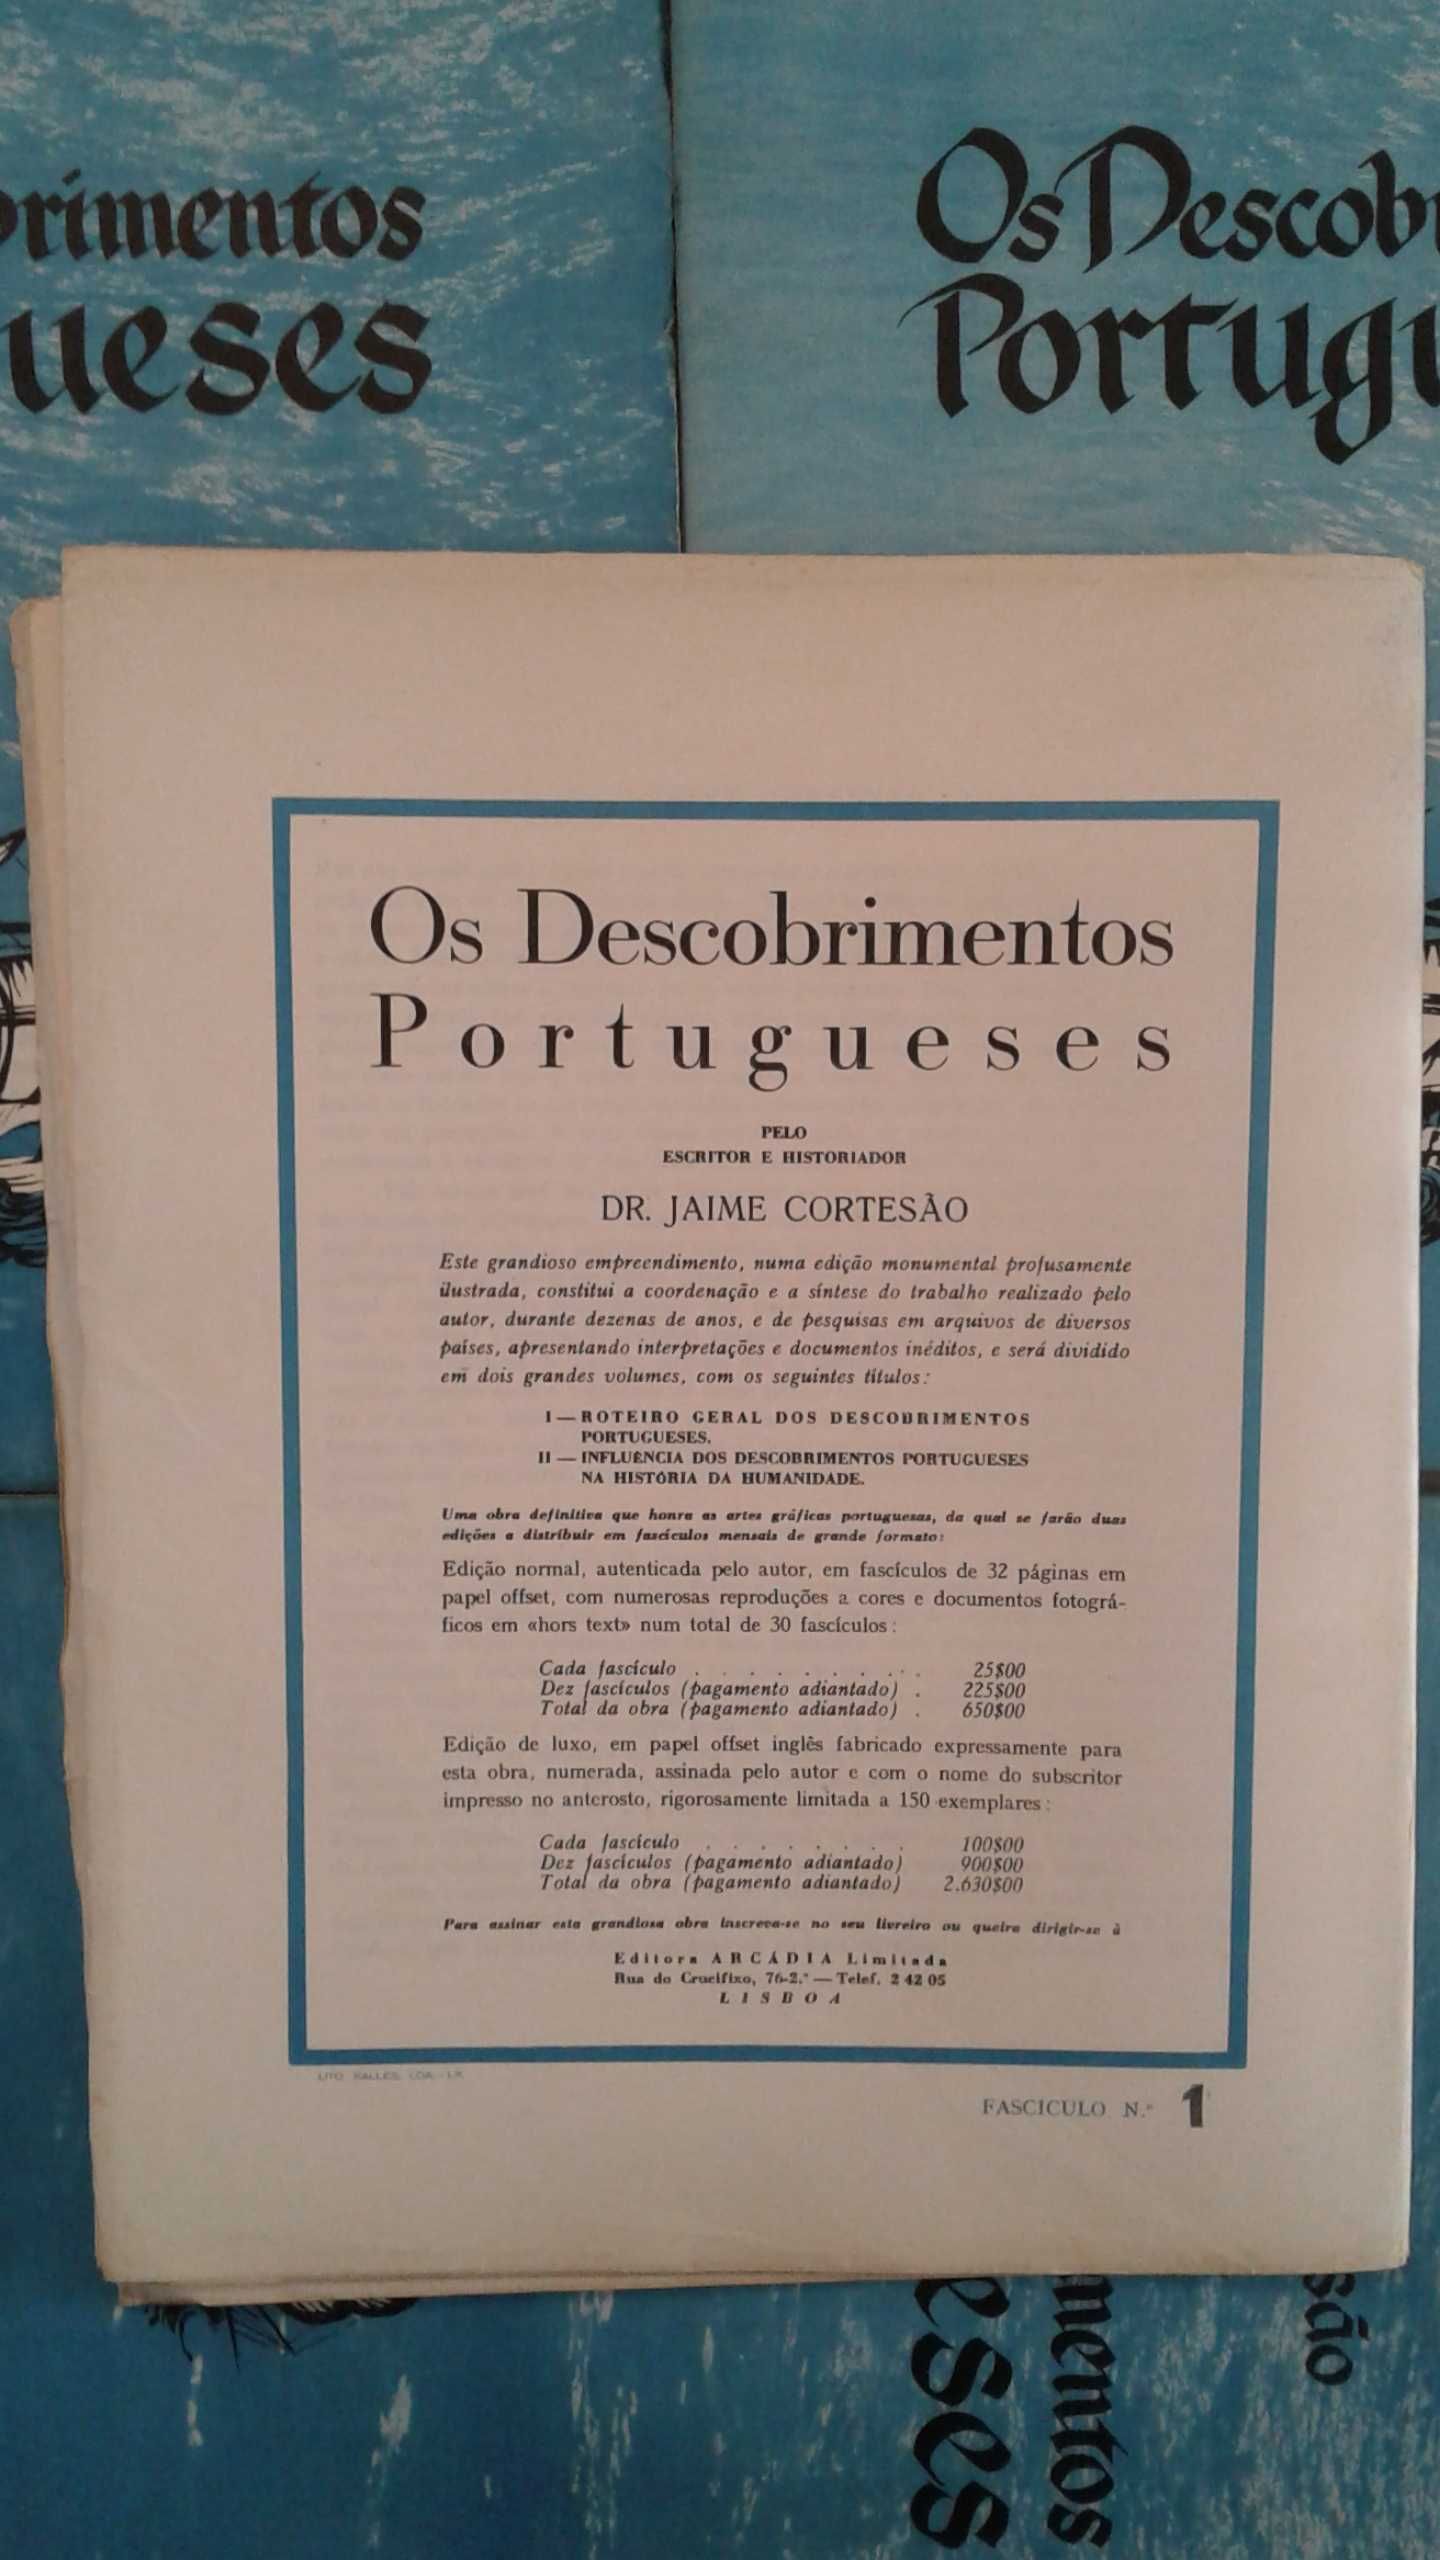 História d´Os Descobrimentos Portugueses de Jaime Cortesão-fascículos